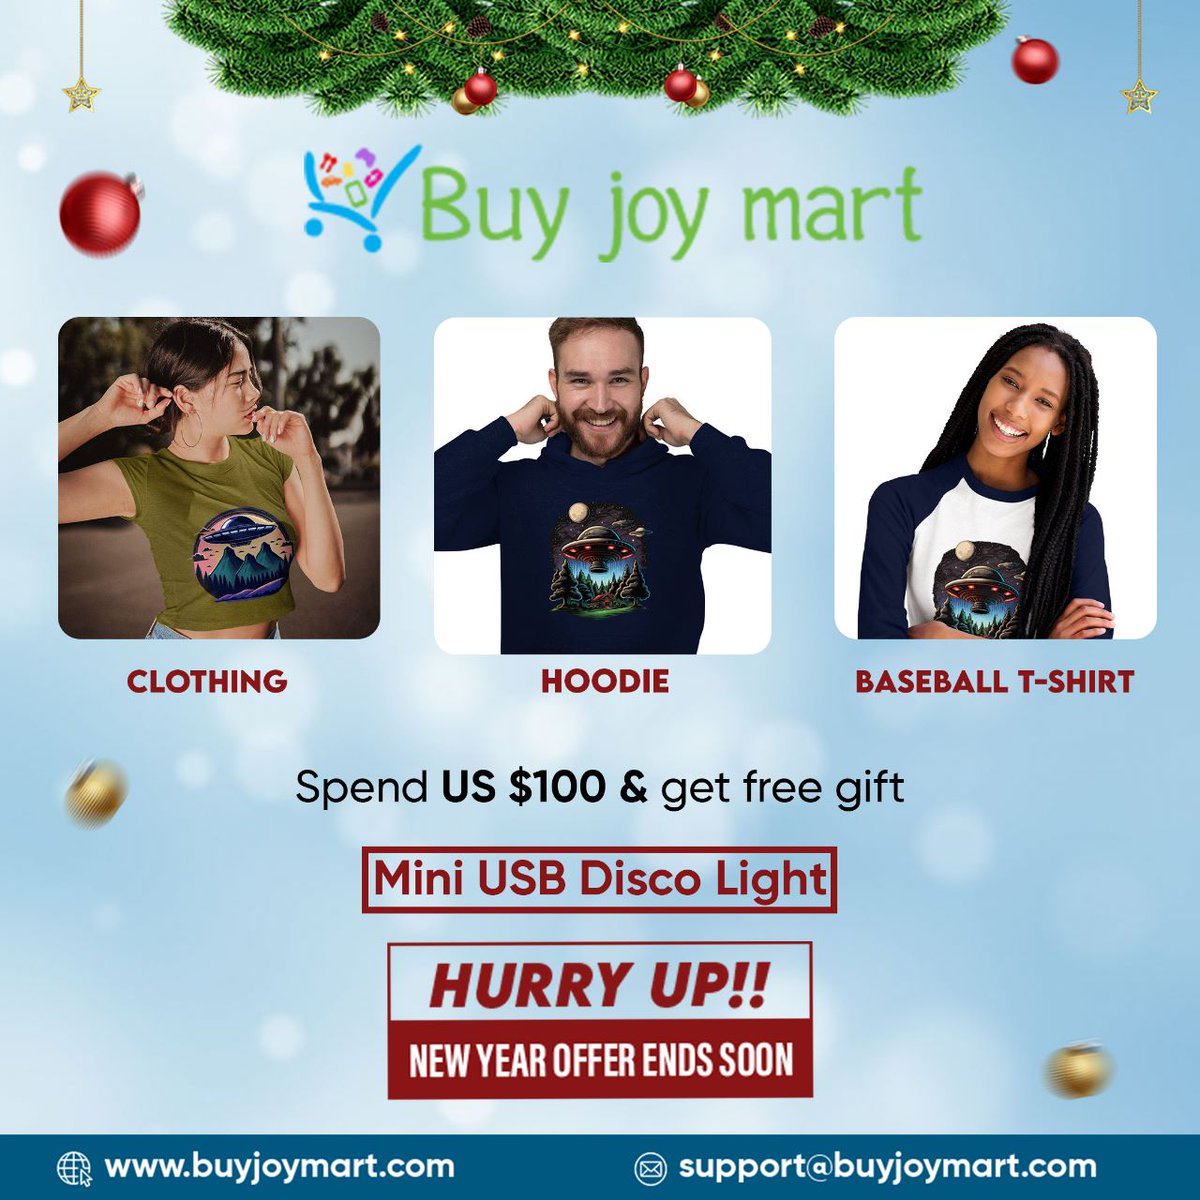 Get the latest fashion of clothing.
buyjoymart.com/clothing

Spend US $100 and get a free Mini USB Disco Light as a Gift
HURRY UP!!

#buyjoymart #onlineshopping #shoppingonline #shopping #clothing #hoodies #winterclothing #tshirtsale #tshirts #hoodieseason